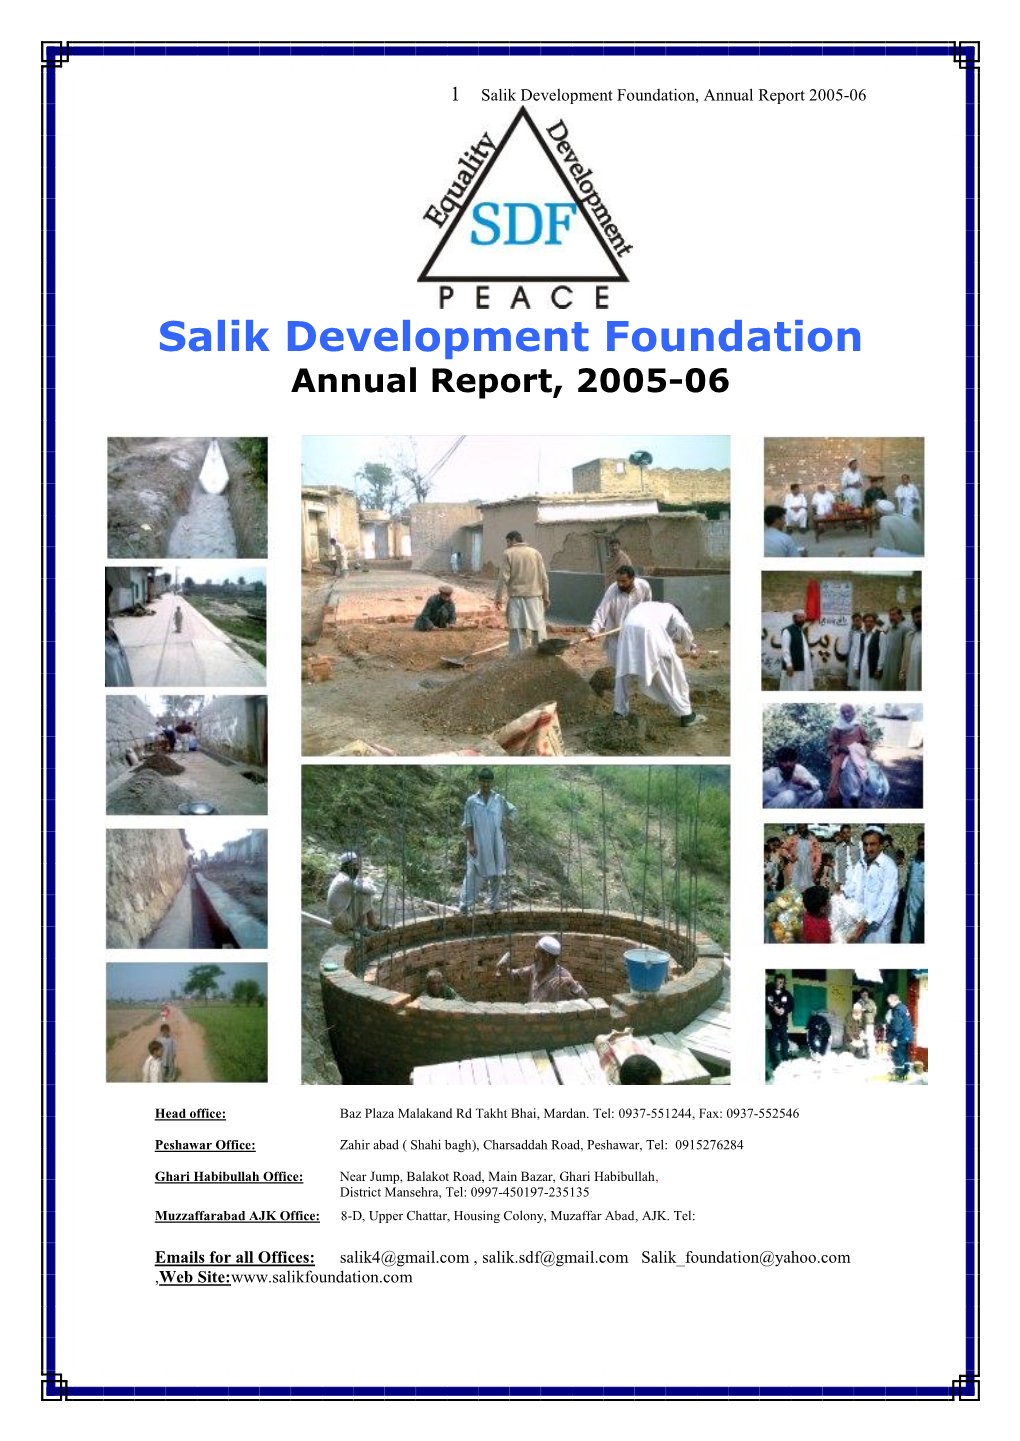 SDF Annual Report 2005-06